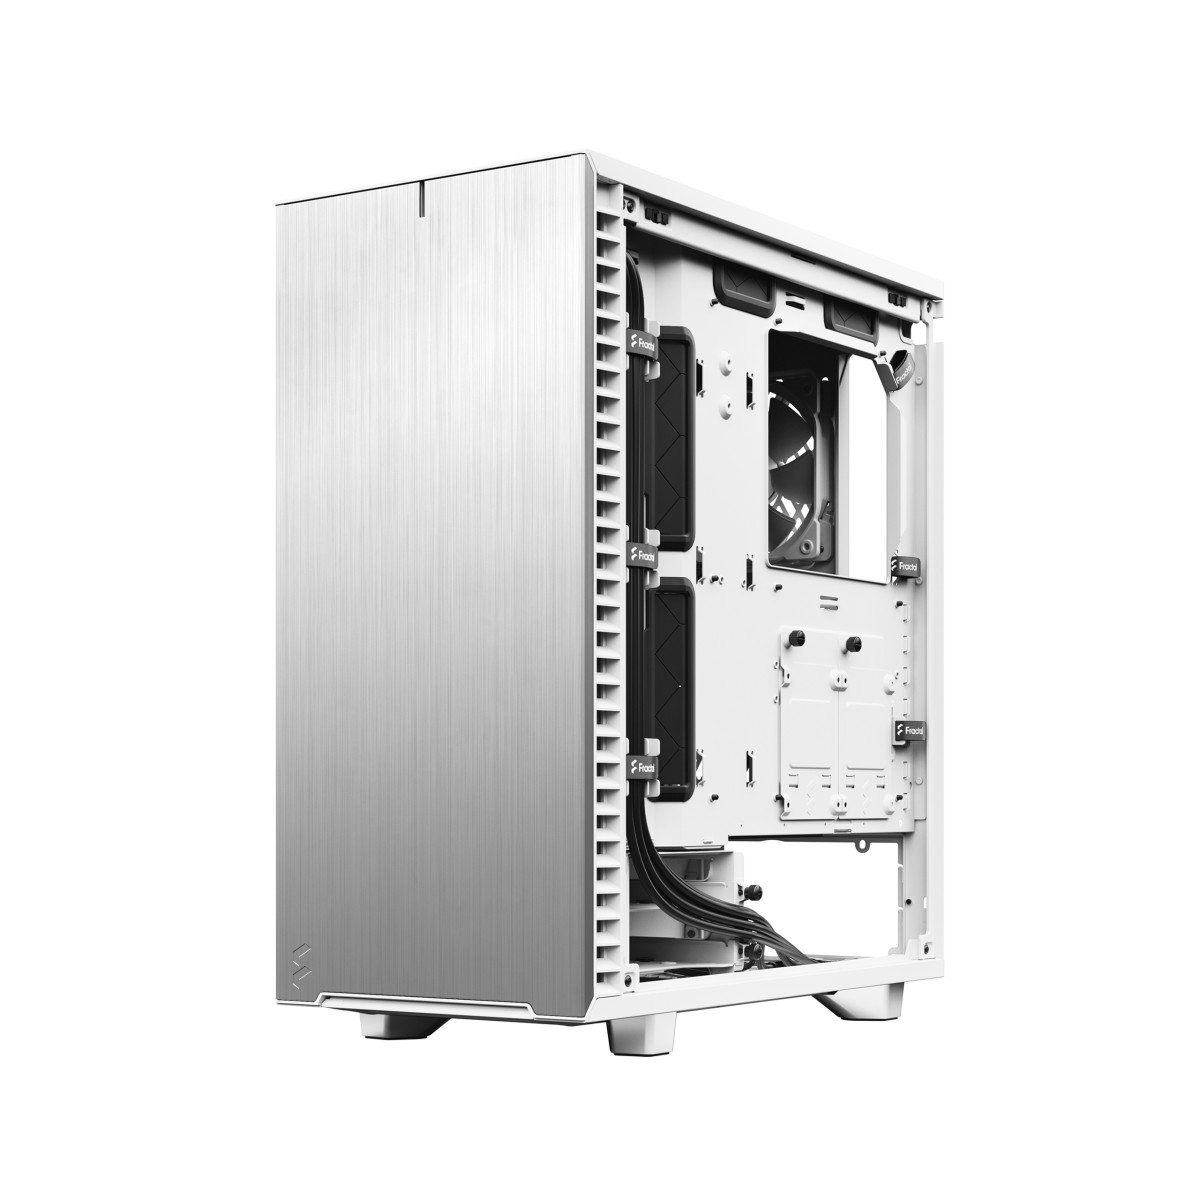 Case ATX Define 7 Compact Wht Solid